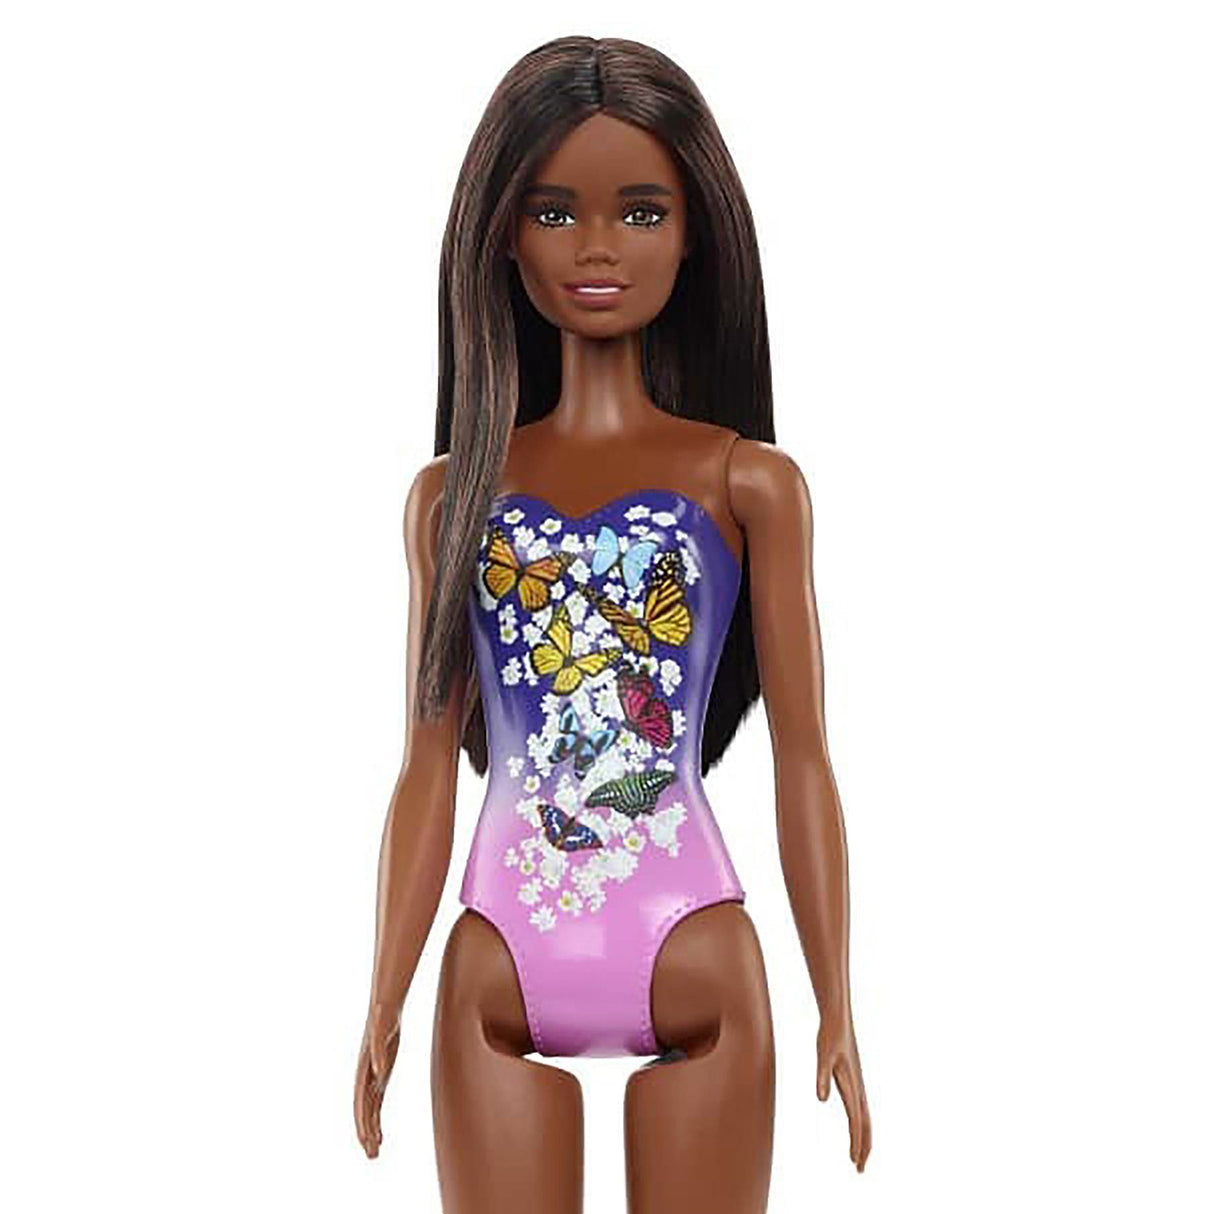 Barbie Beach Doll Purple Butterfly Swimsuit